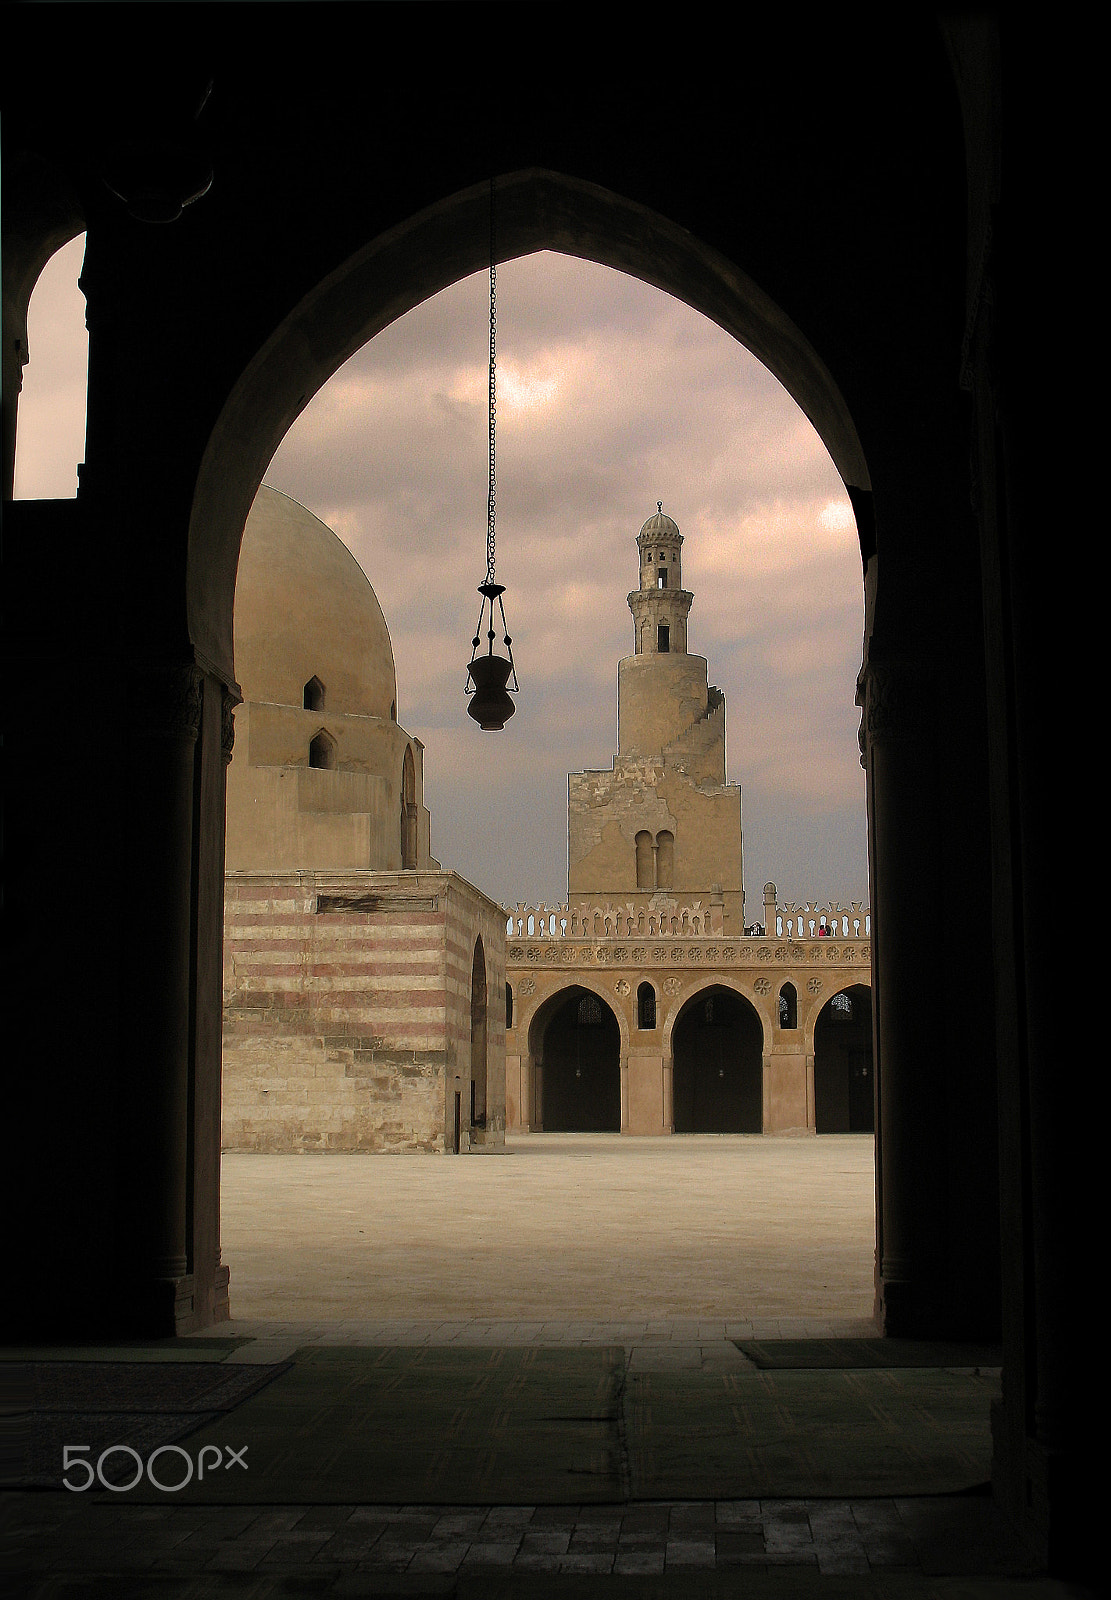 Canon POWERSHOT A620 sample photo. Ibn tulun mosque, cairo photography